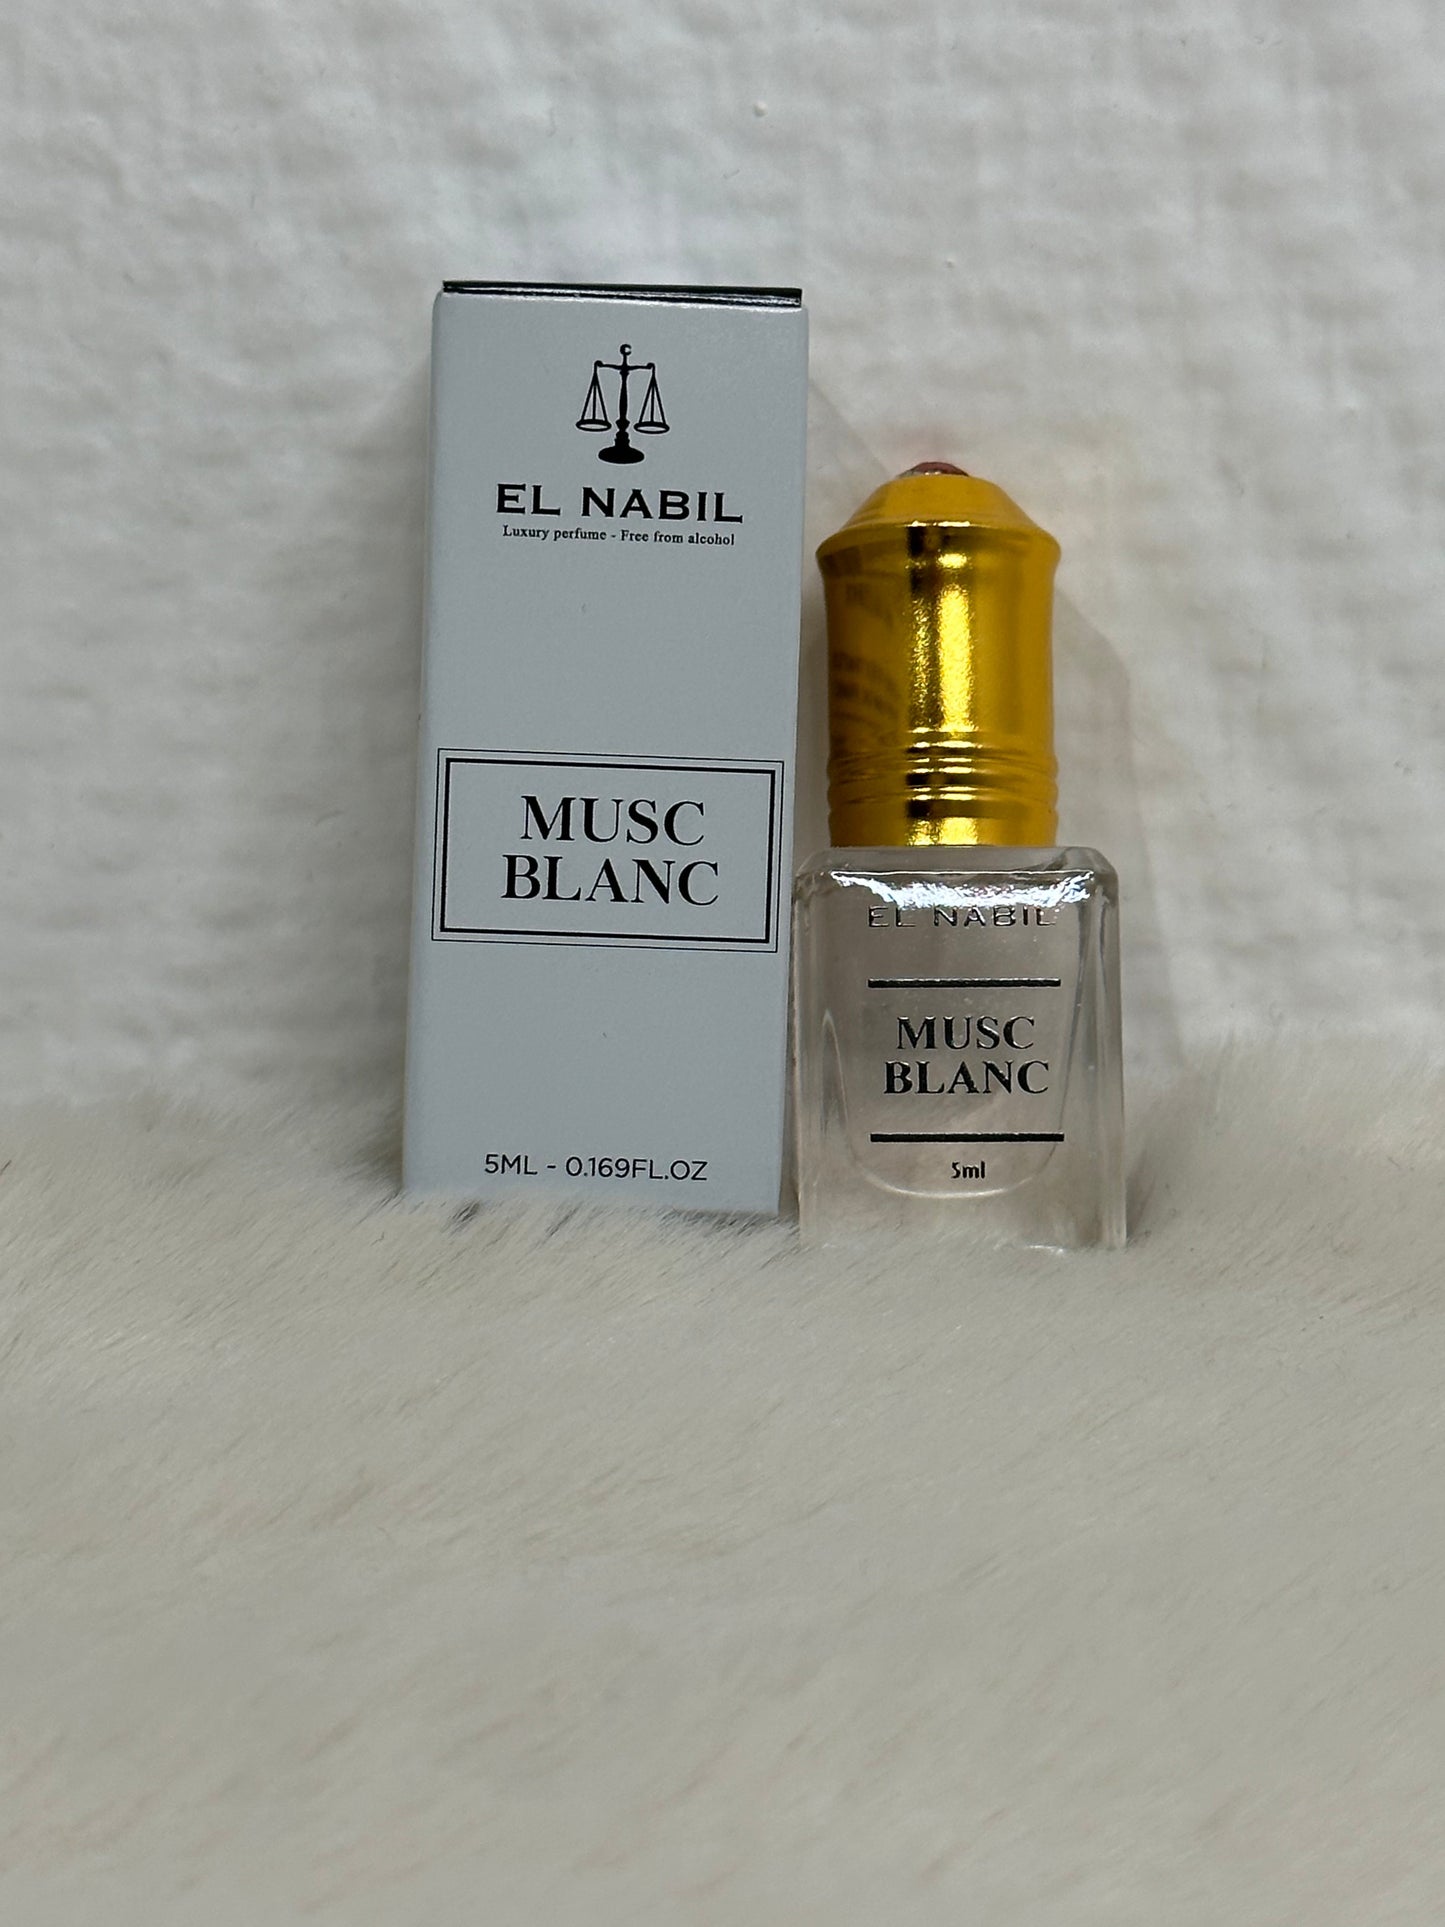 Musc blanc - Extrait de parfum El Nabil